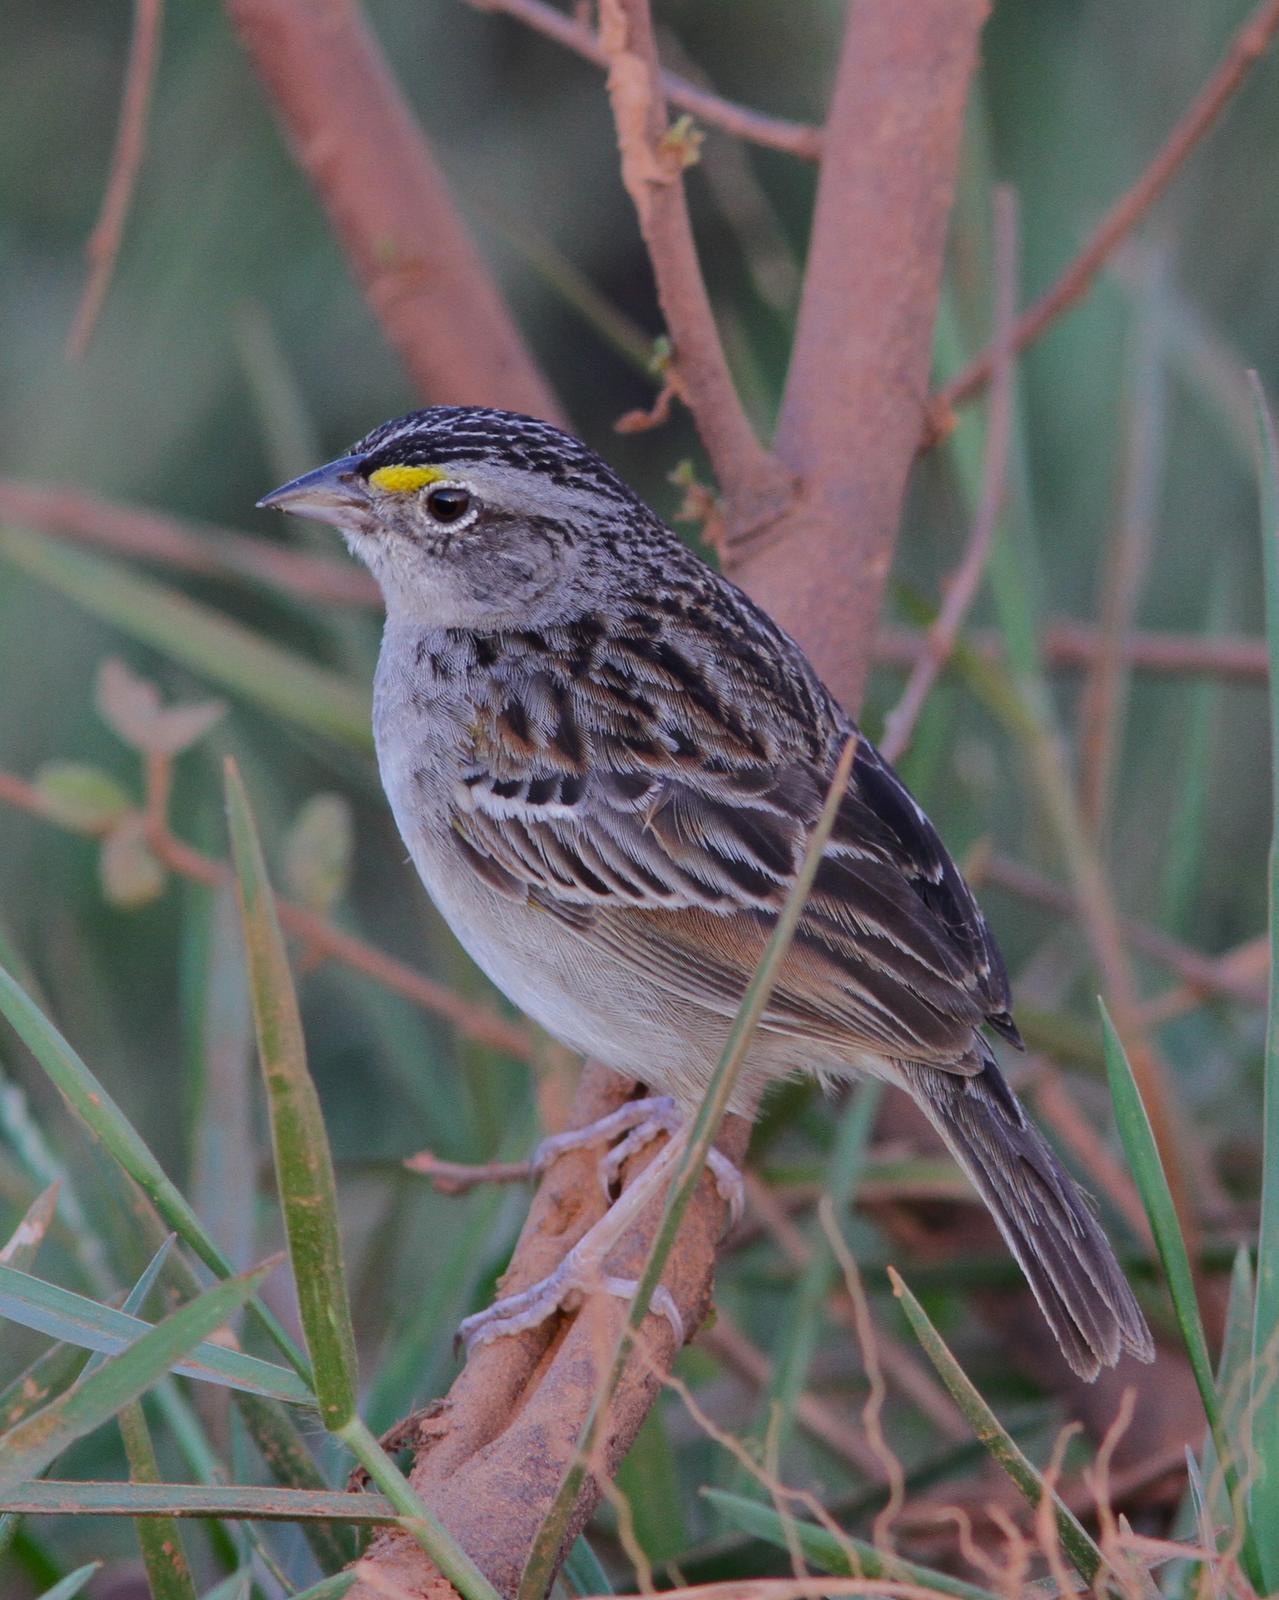 Grassland Sparrow Photo by Marcelo Padua